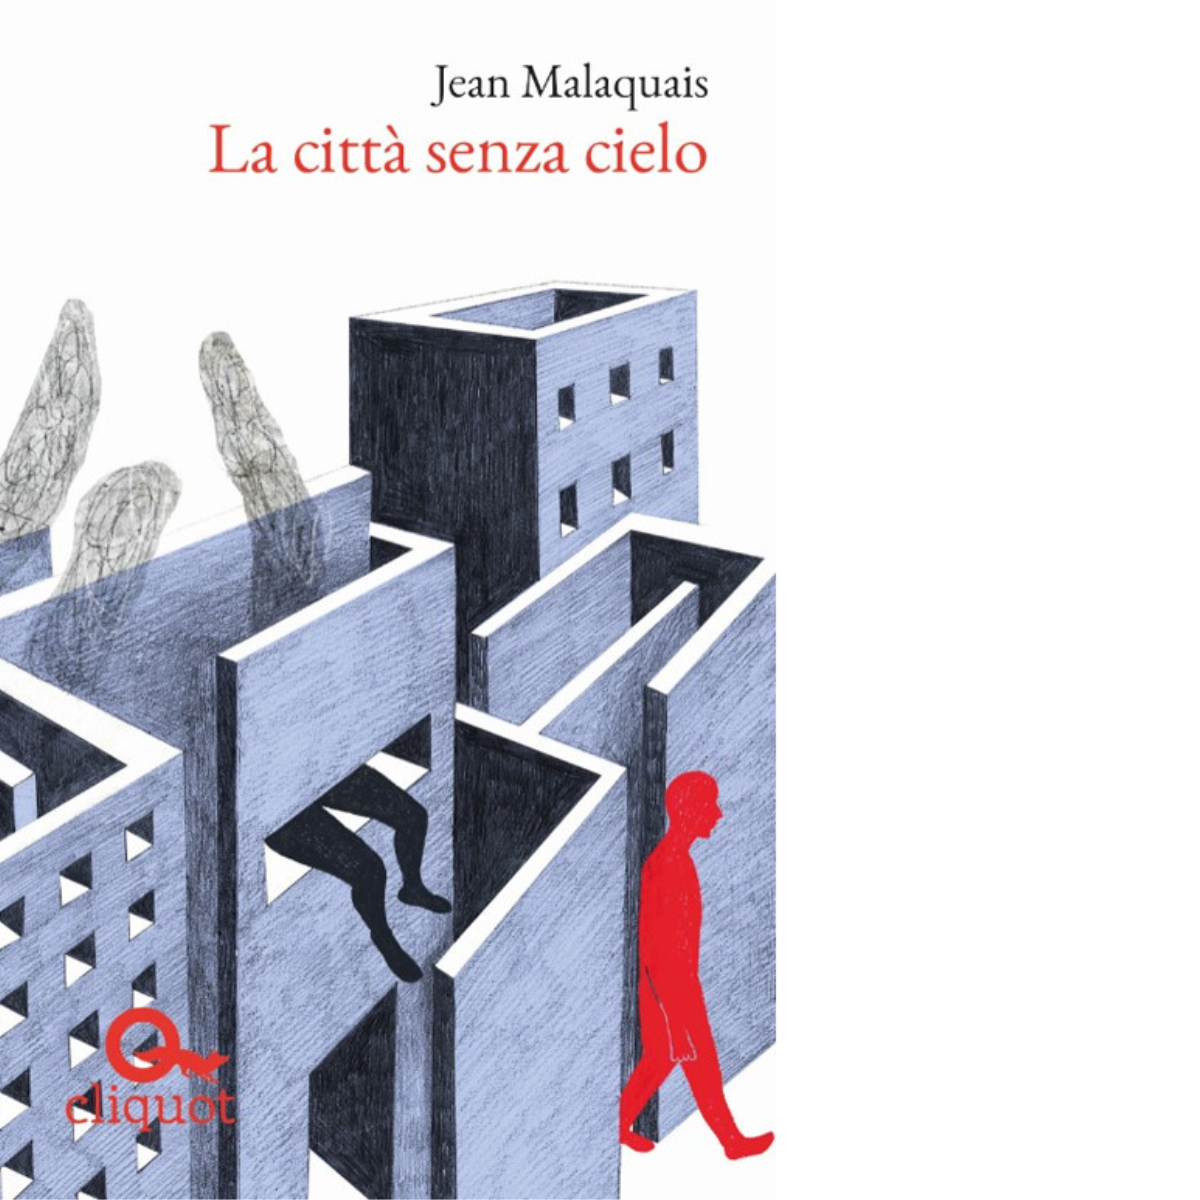 La citt? senza cielo - Jean Malaquais - Cliquot, 2019